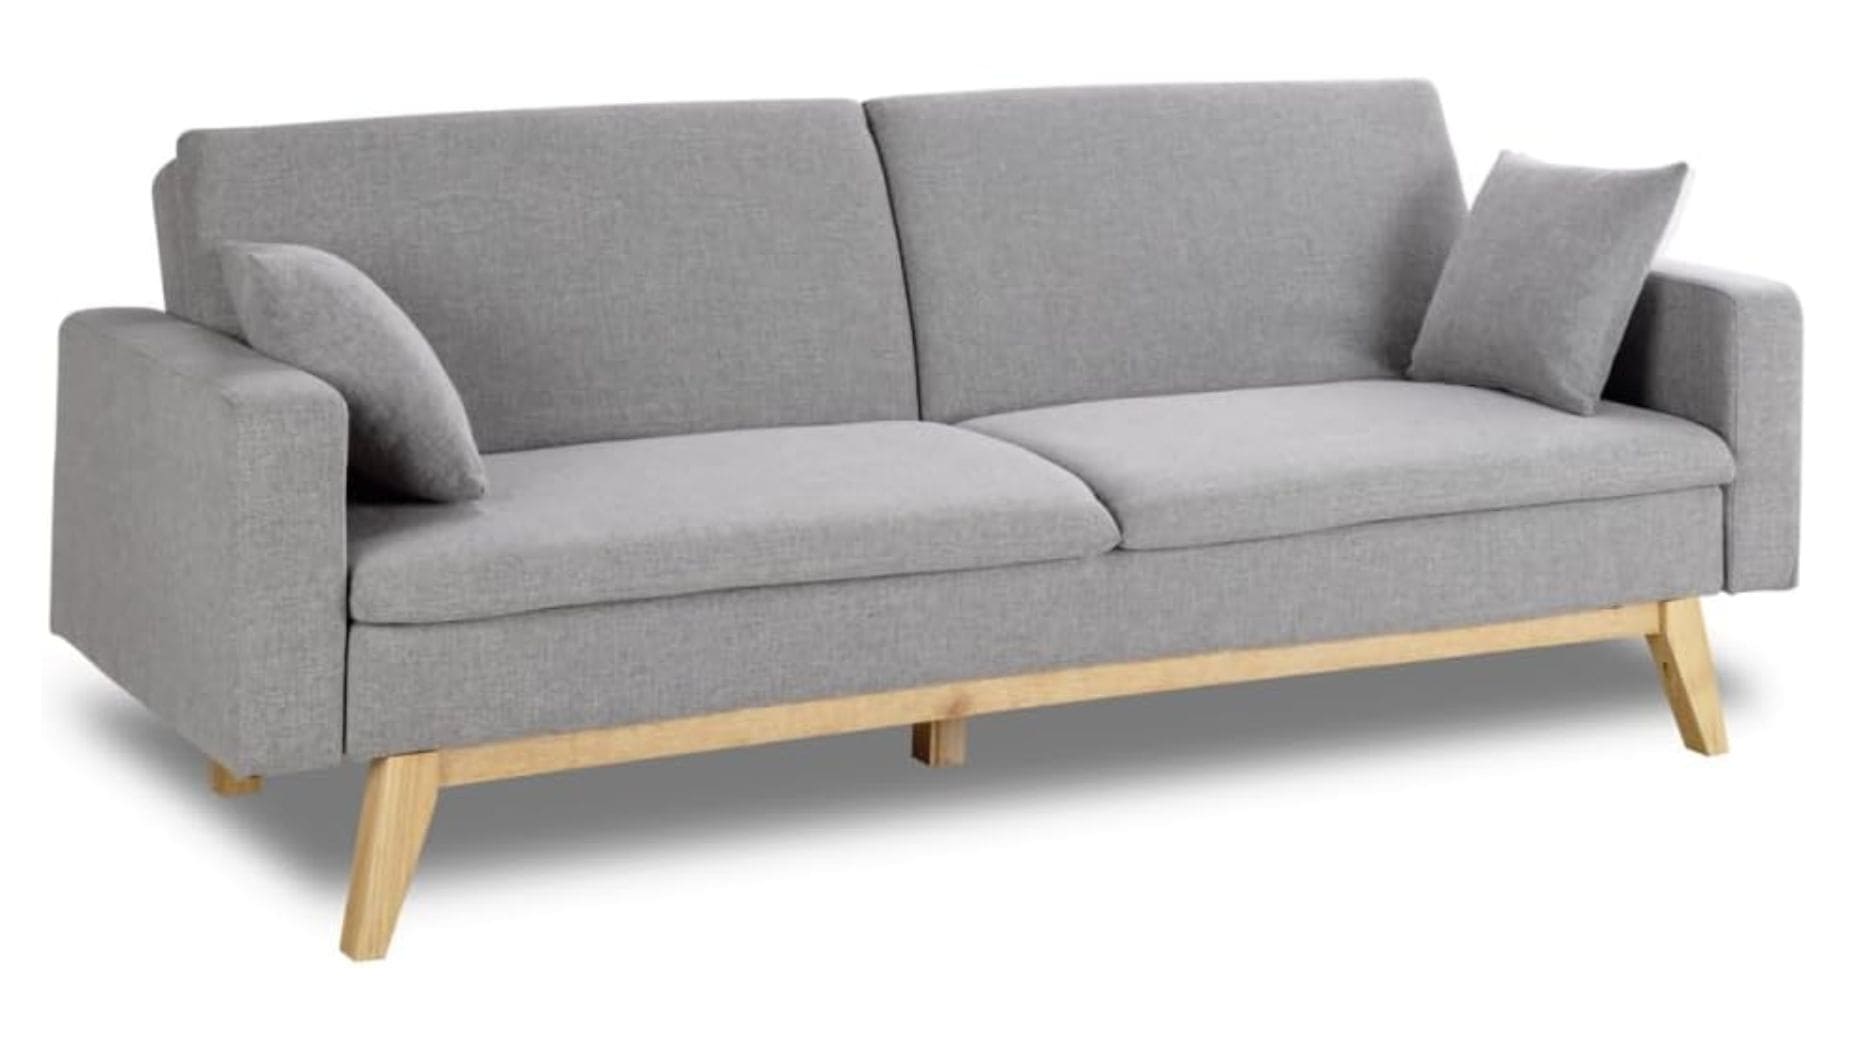 El sofá cama más vendido de Amazon ahora más barato